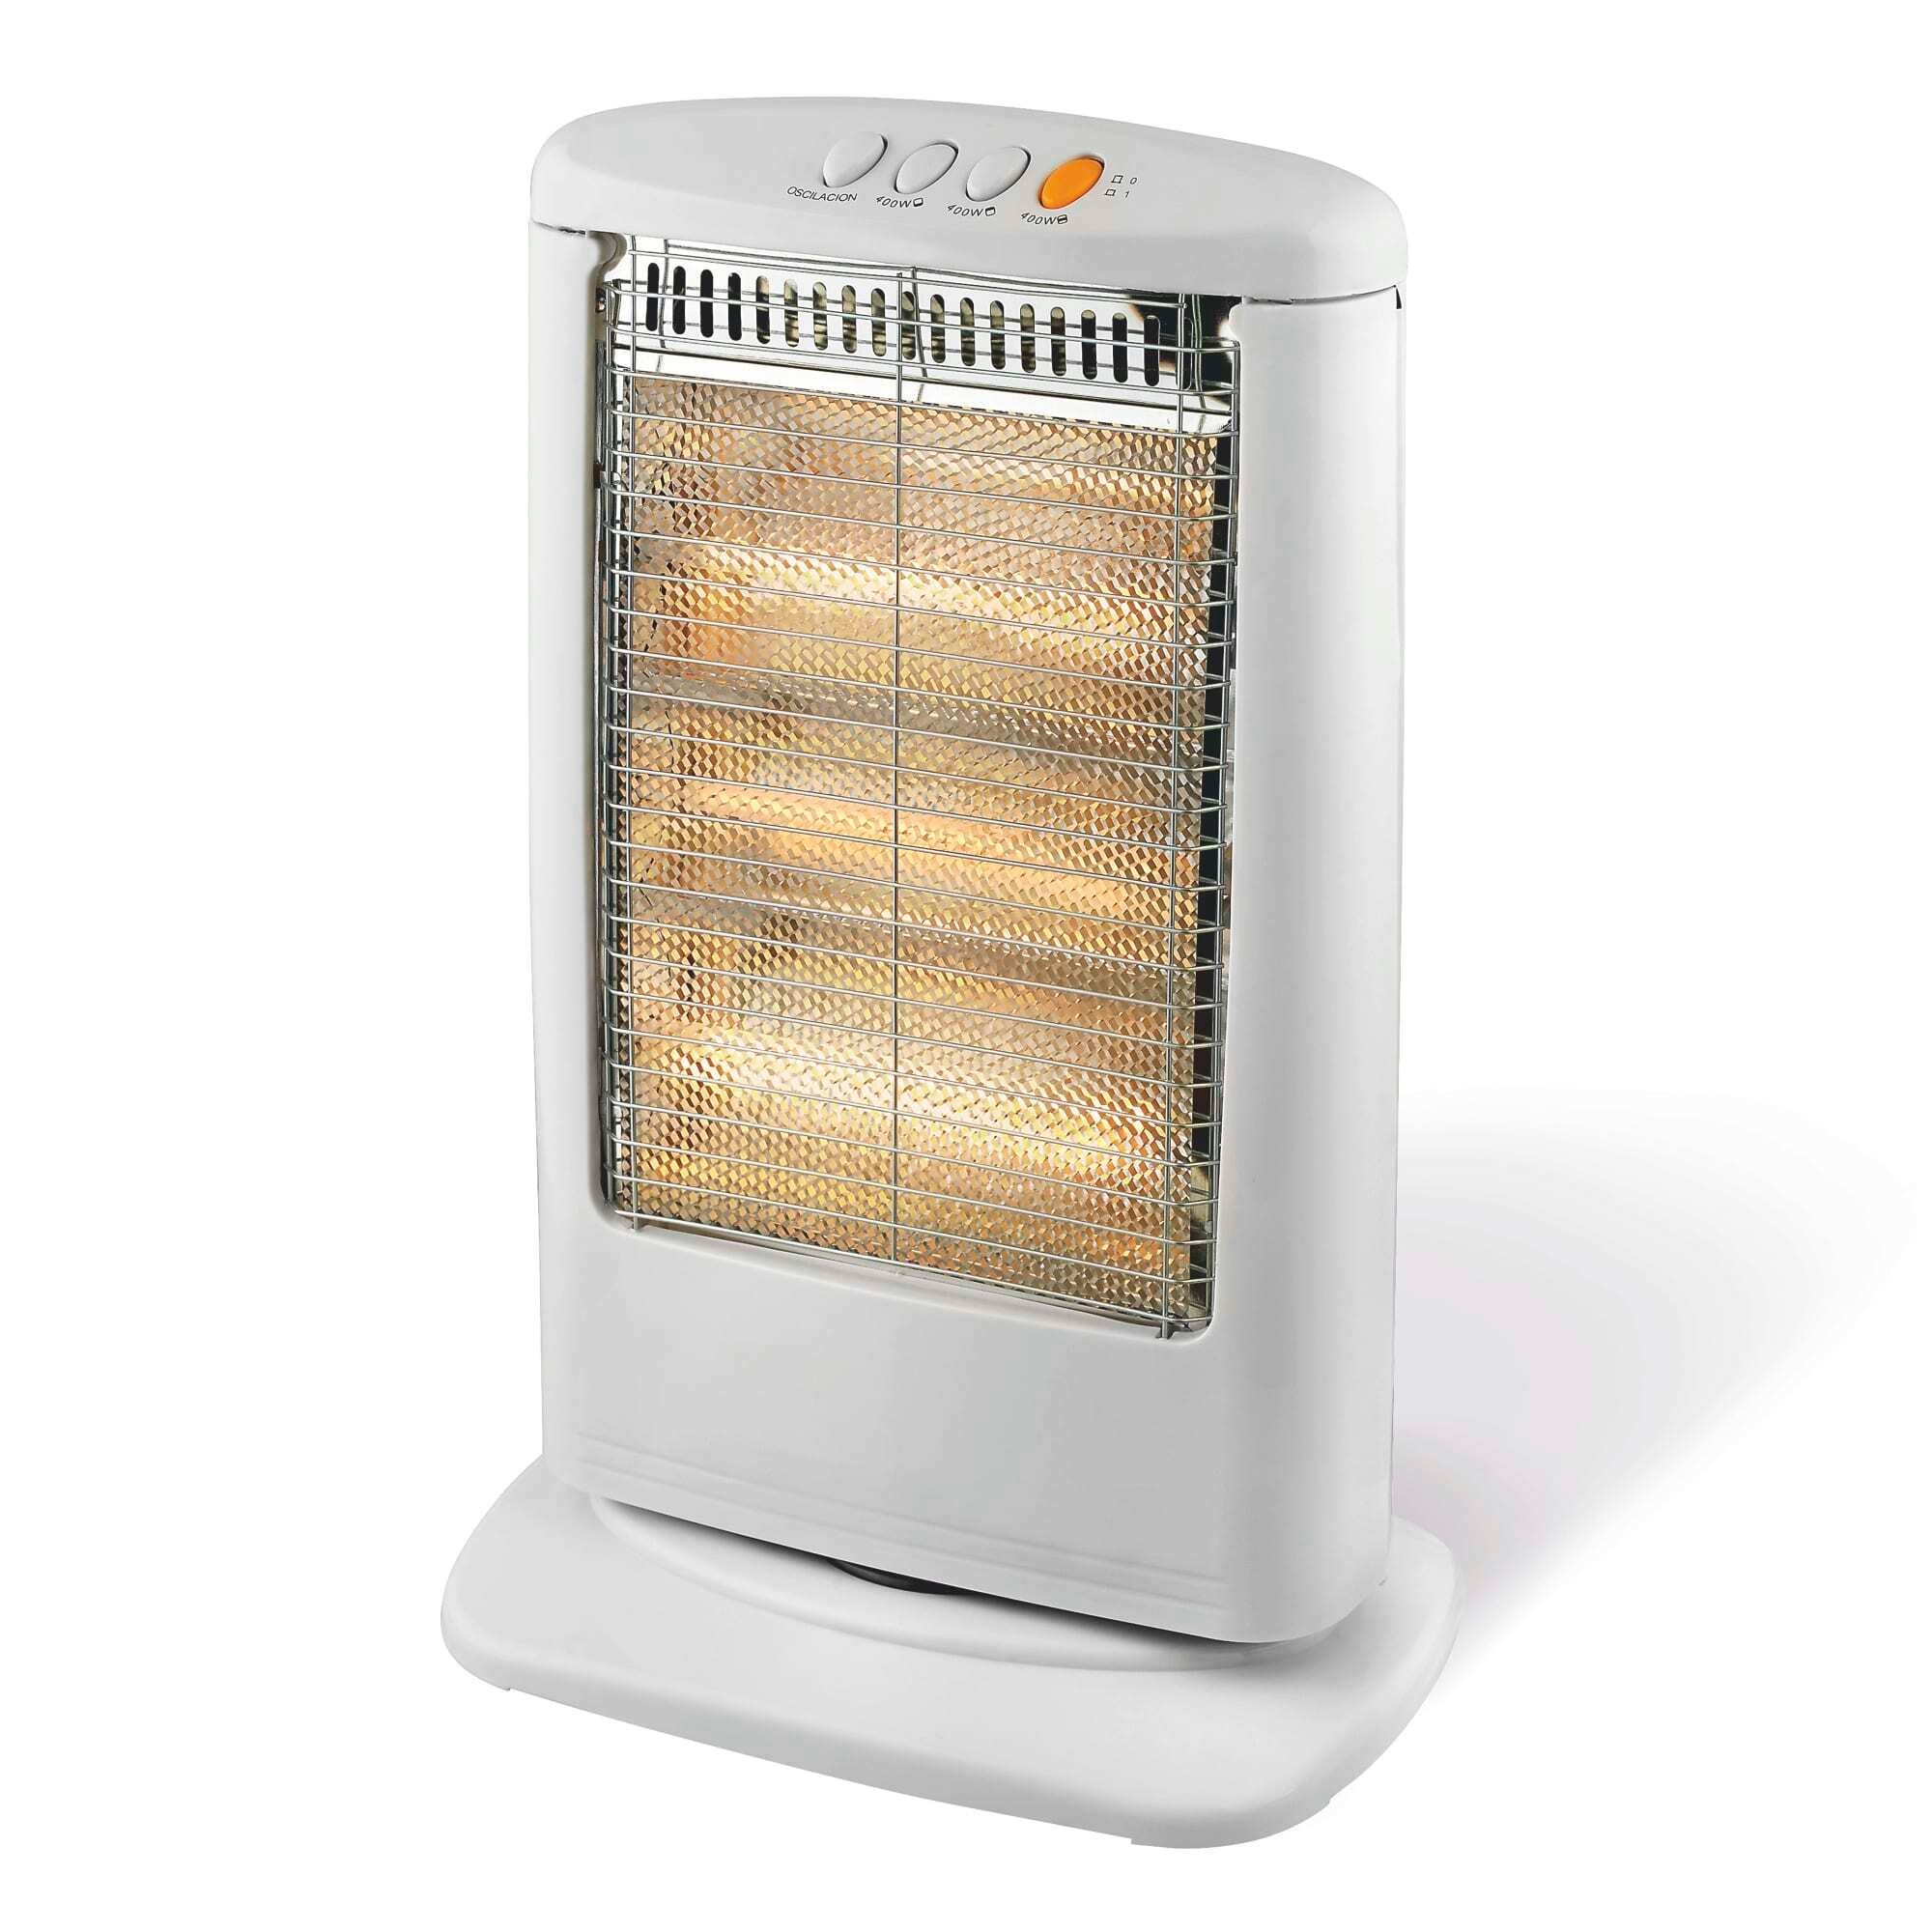 Warmlite 1200W Halogen Heater